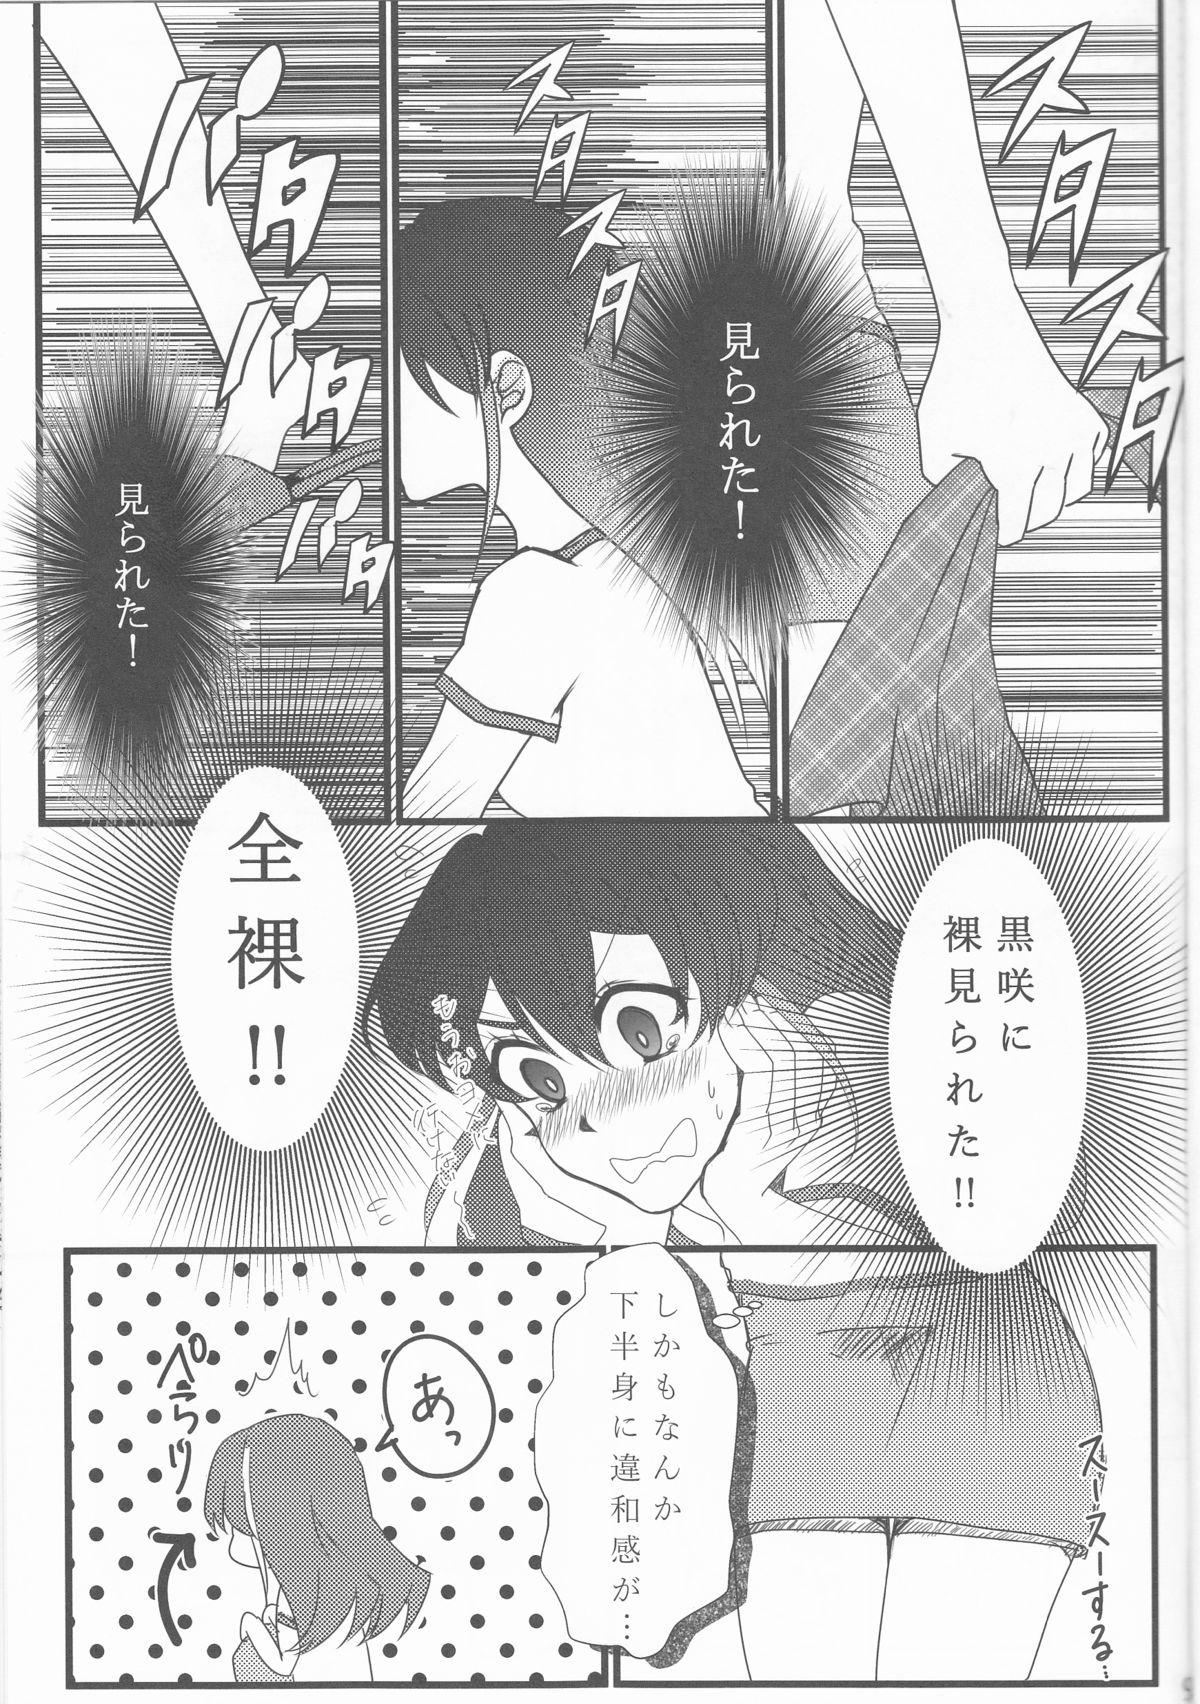 White Chick Hoshoku Kankei ni Aru Serena to Shun ga Renai Kanjou o Idaku to Kou Naru. - Yu-gi-oh arc-v Eurosex - Page 10